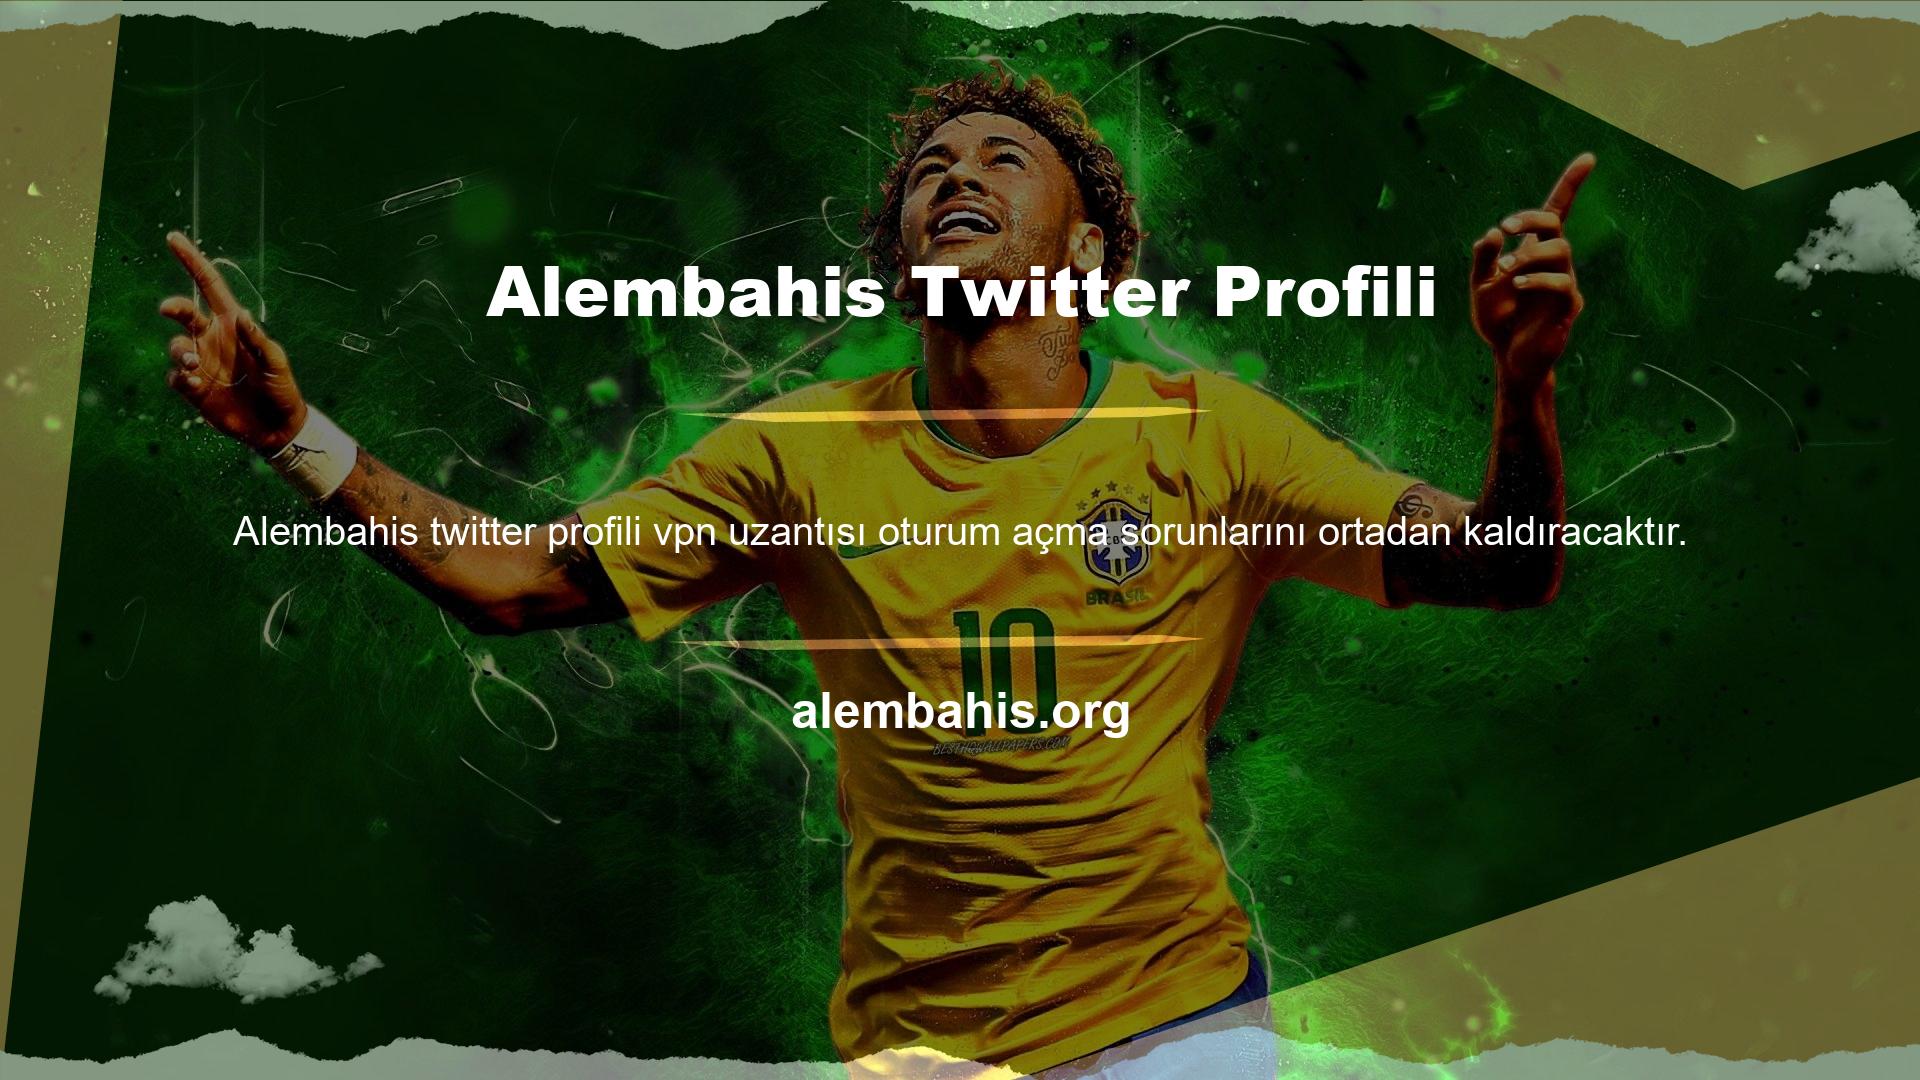 Alembahis Twitter profili, tüm sosyal medya platformlarında kullanıcıları olduğu ve tüm bu hesaplarla aktif olarak etkileşimde bulunduğu için başarılı bir platformdur